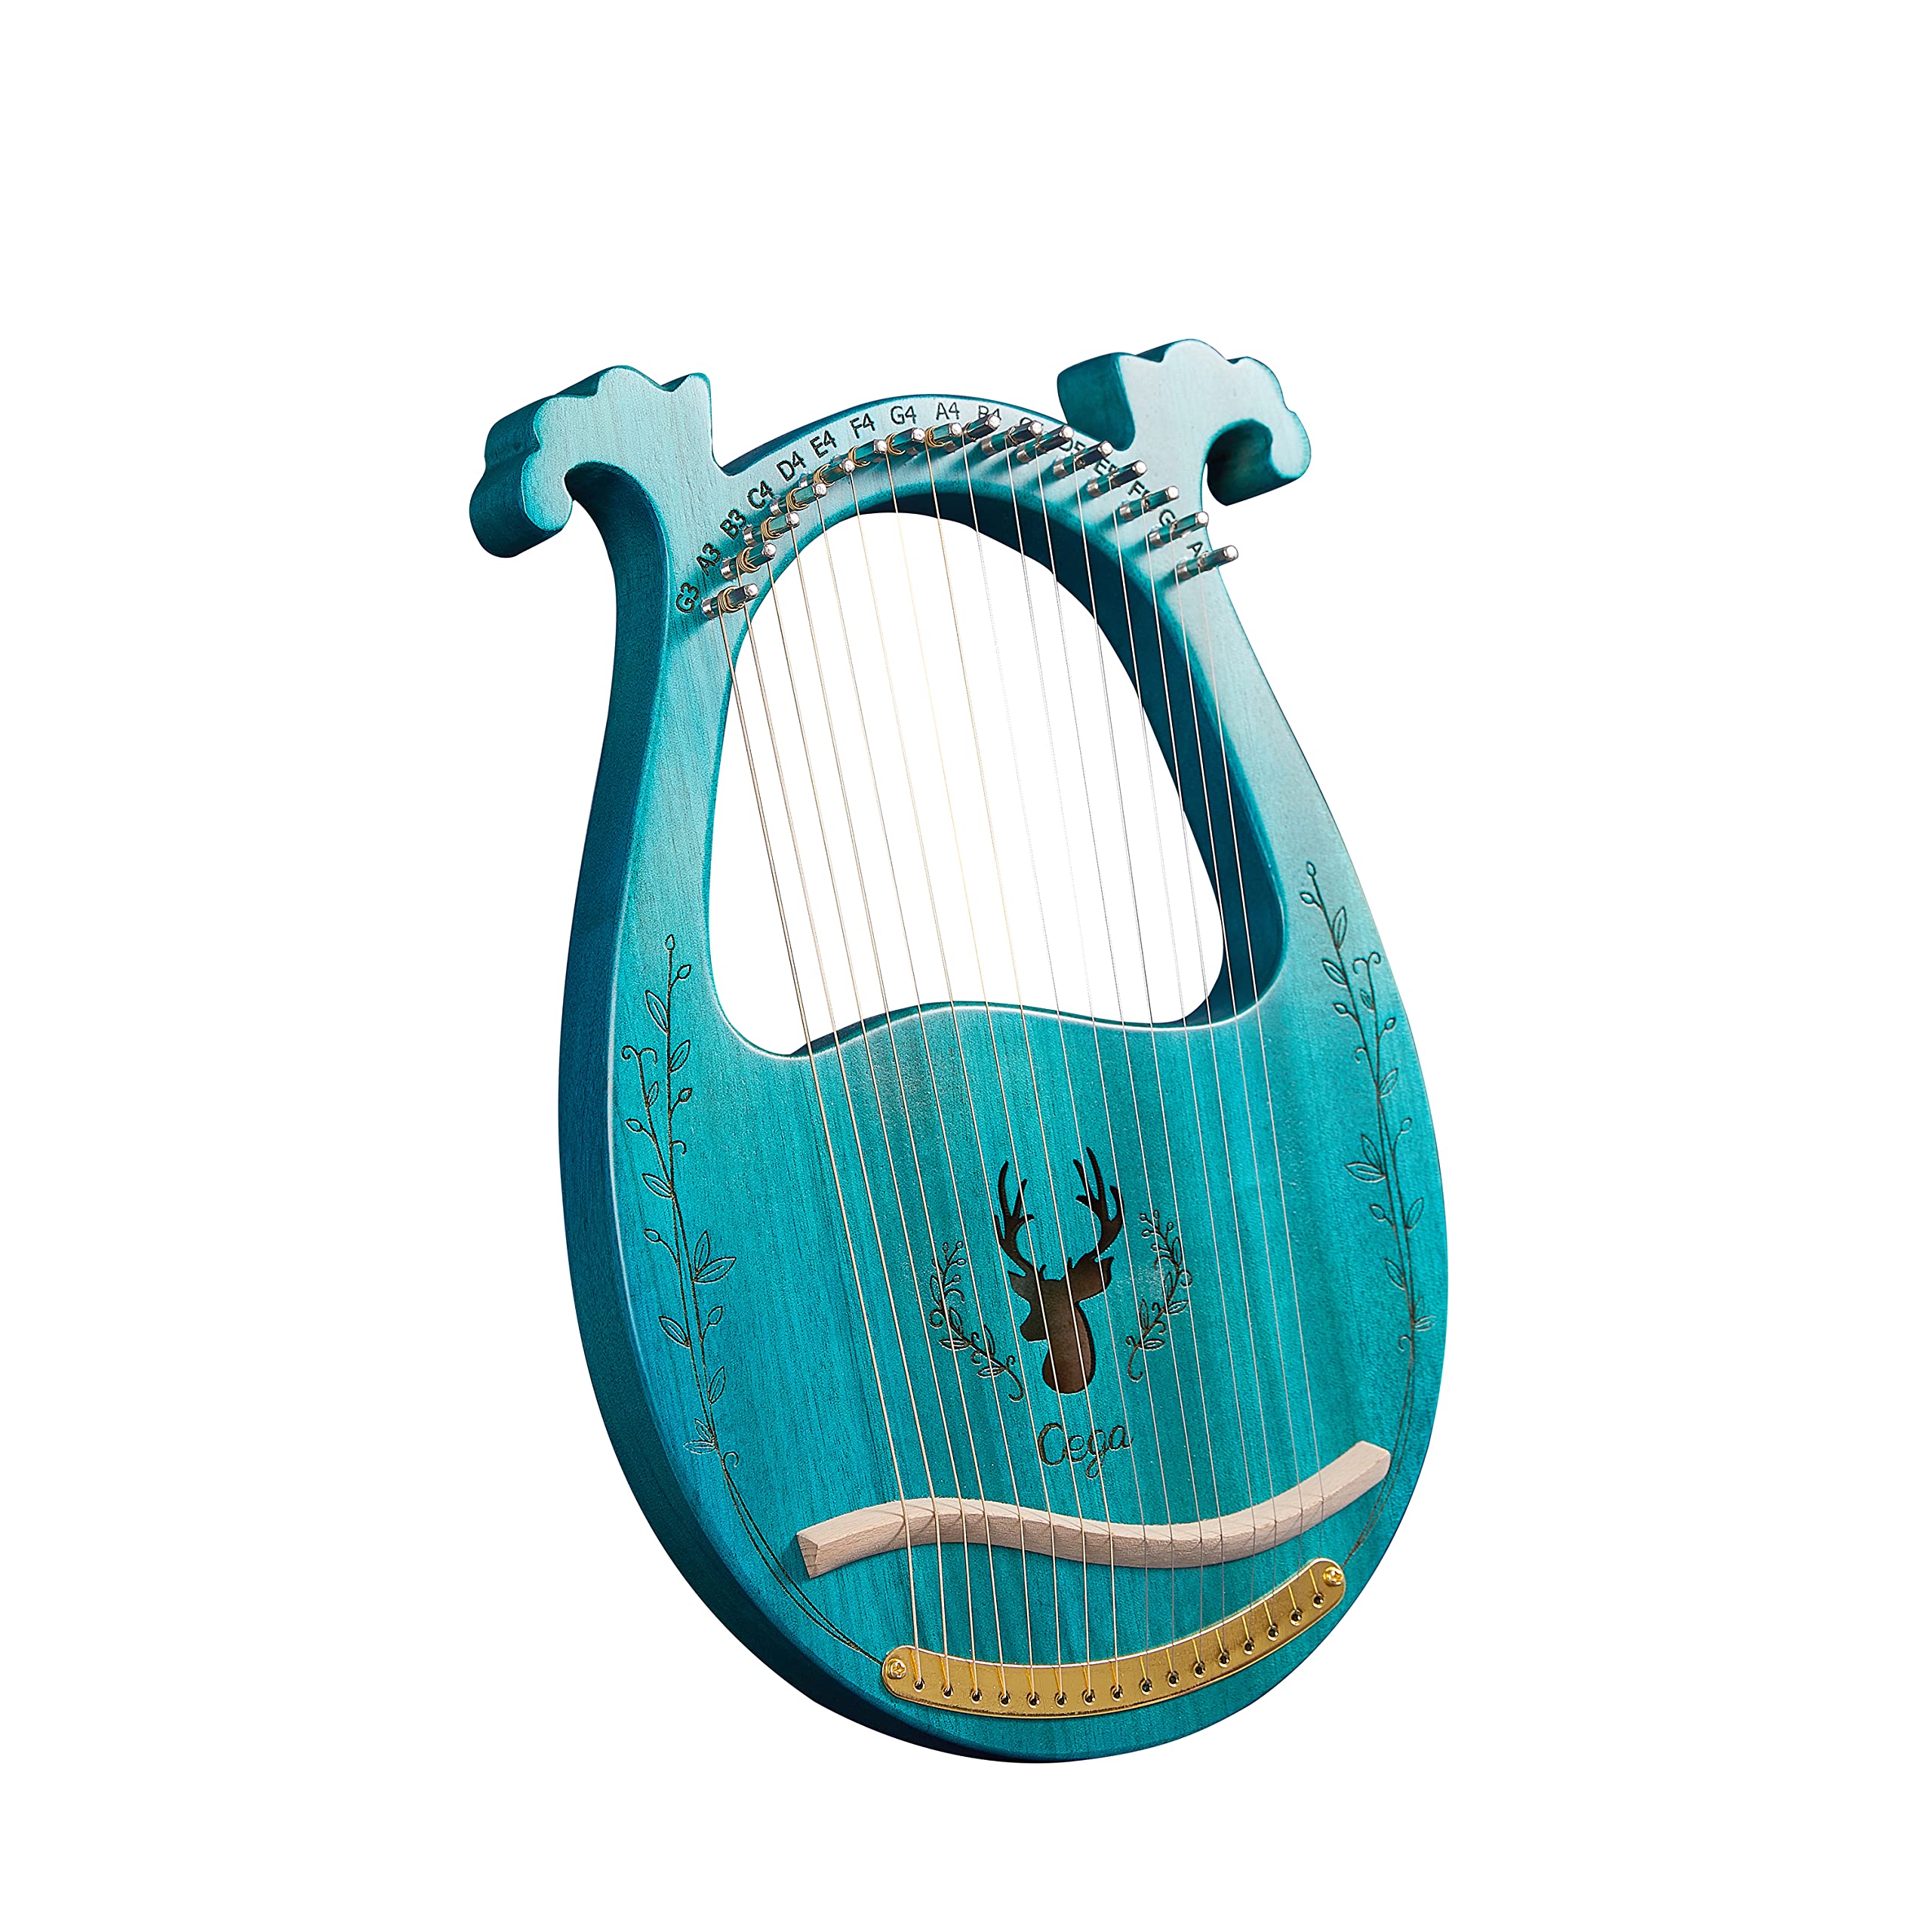 Harfe Instrument Mahagoni Saiteninstrument Tragbare 16 Saiten Lyre Harfe für Erwachsene Kinder Anfänger,Metall Saiten,Mit Stimmschlüssel Und Saiten,Tragetasche